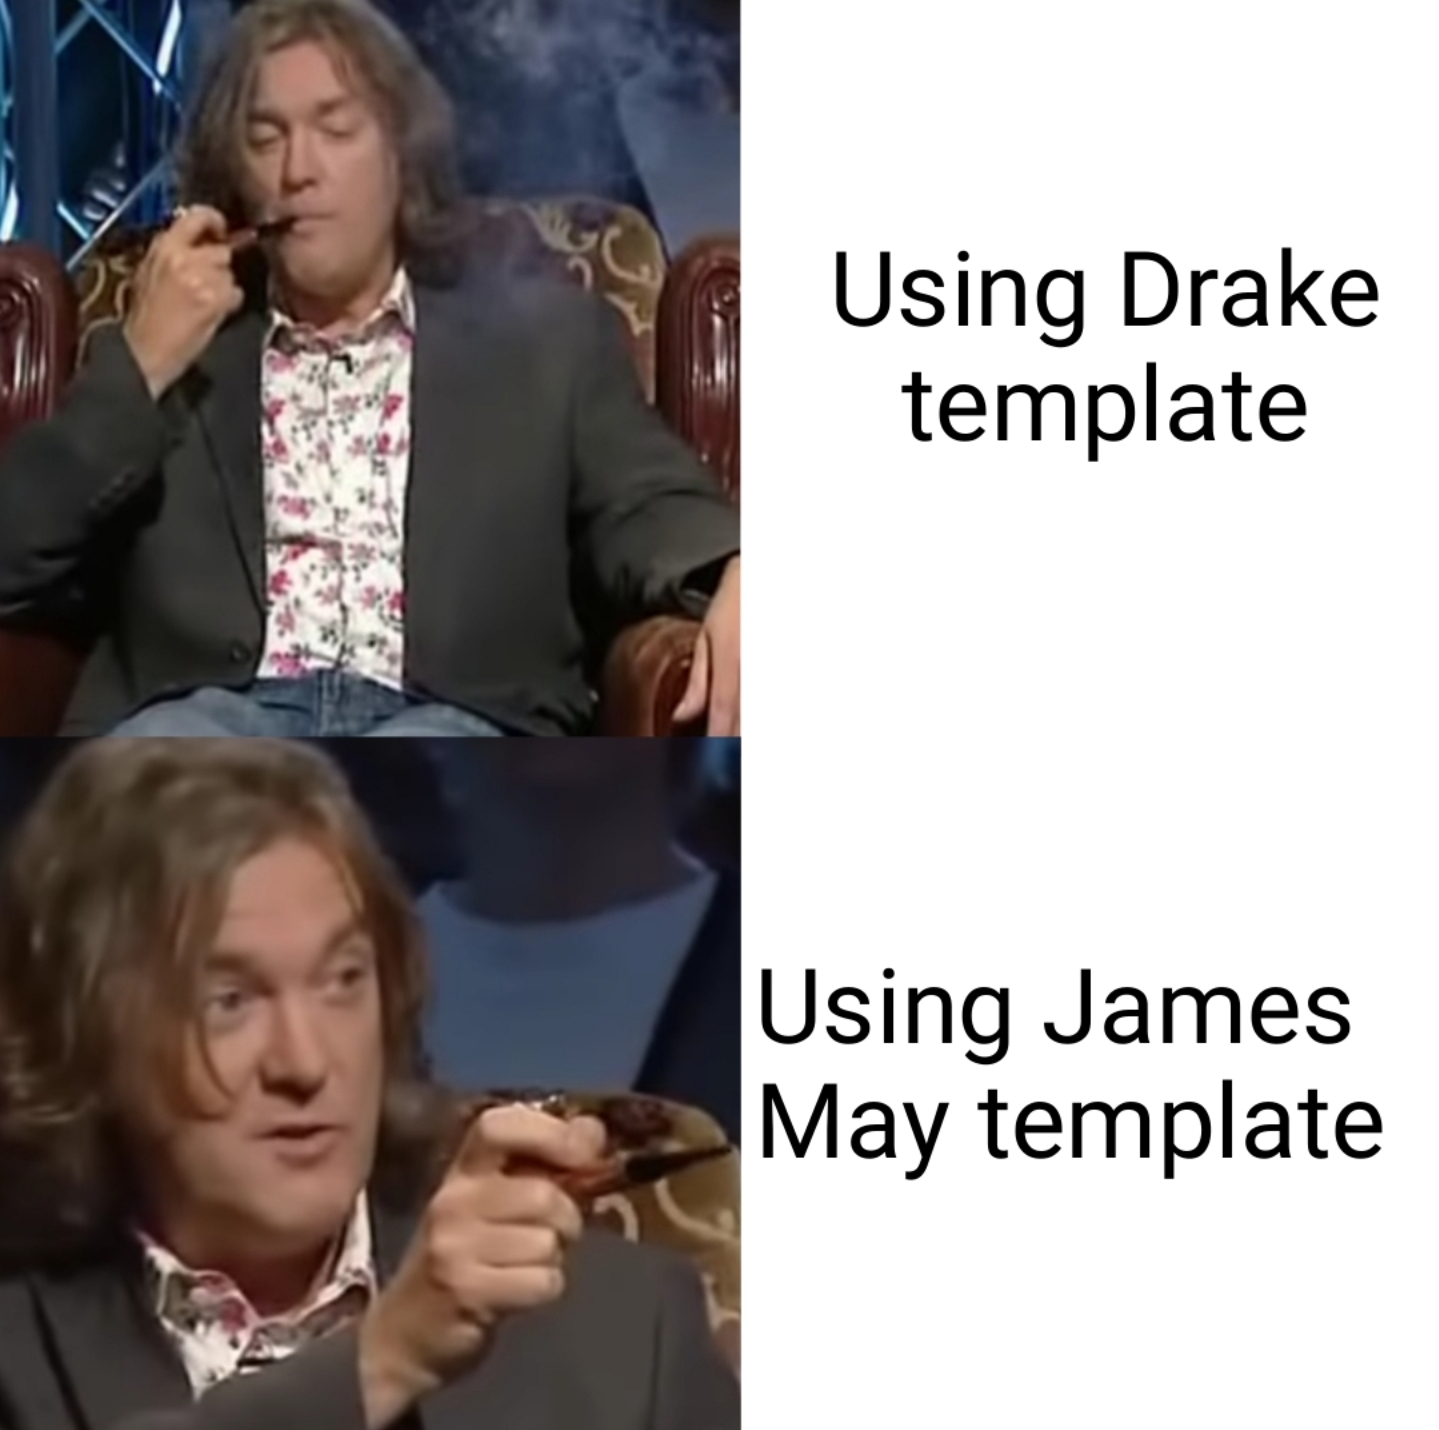 james may - Using Drake template Using James May template